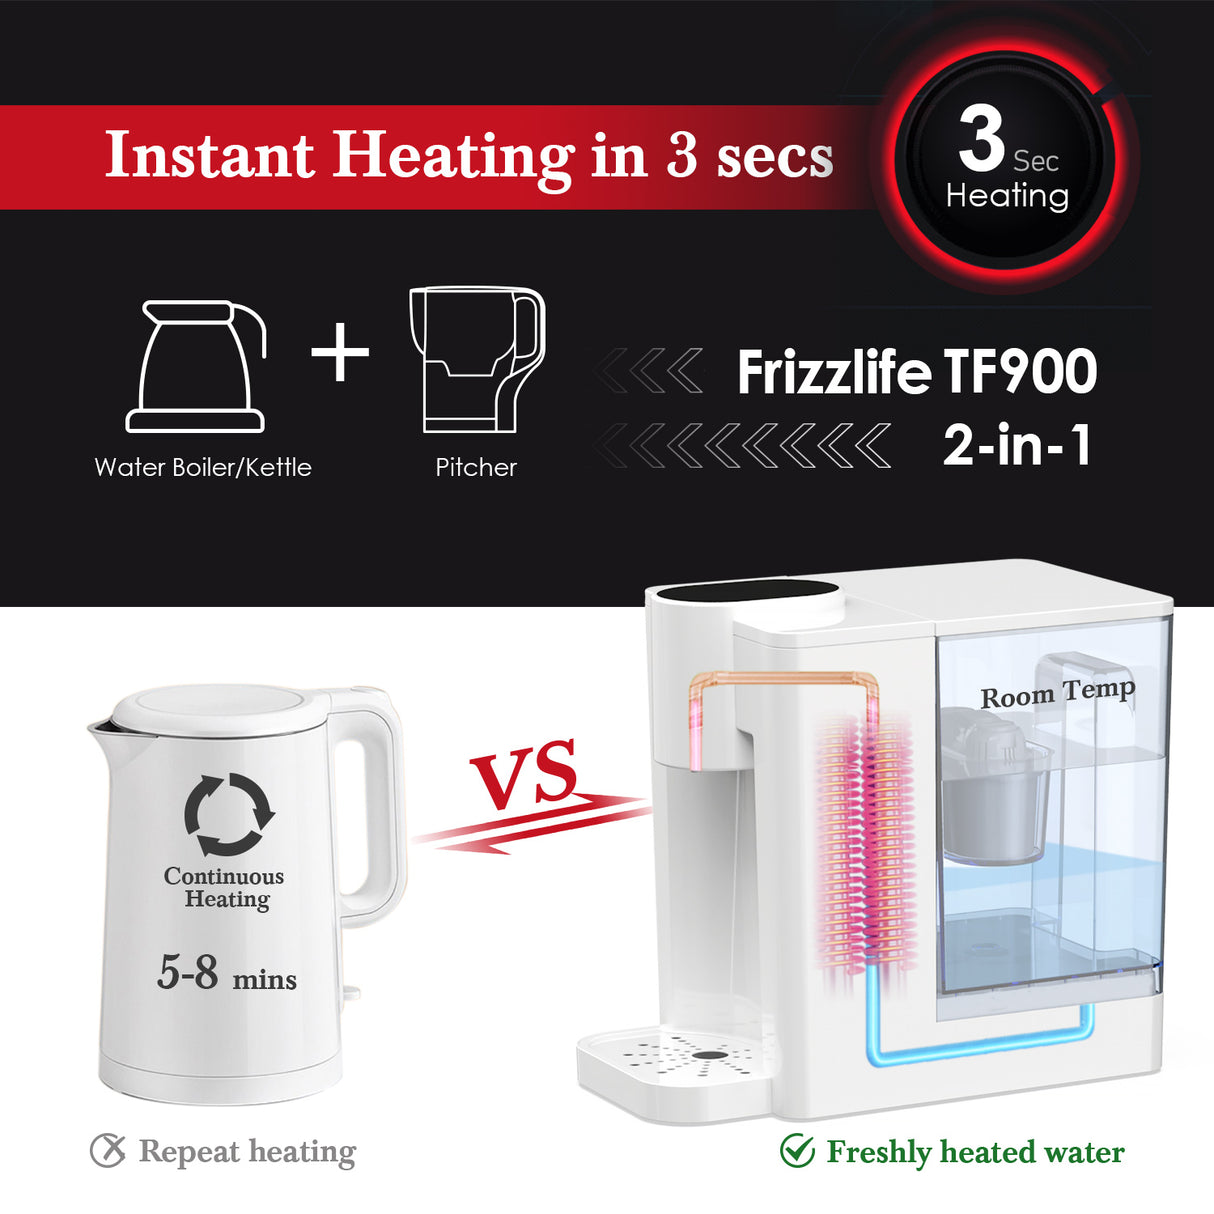 FRIZZLIFE TF900 Filtro dispensador de agua caliente instantáneo, 5 temperaturas y 3 configuraciones de volumen, bloqueo de seguridad de alta temperatura, instalación cero, estándar UL probado, 1 filtro incluido